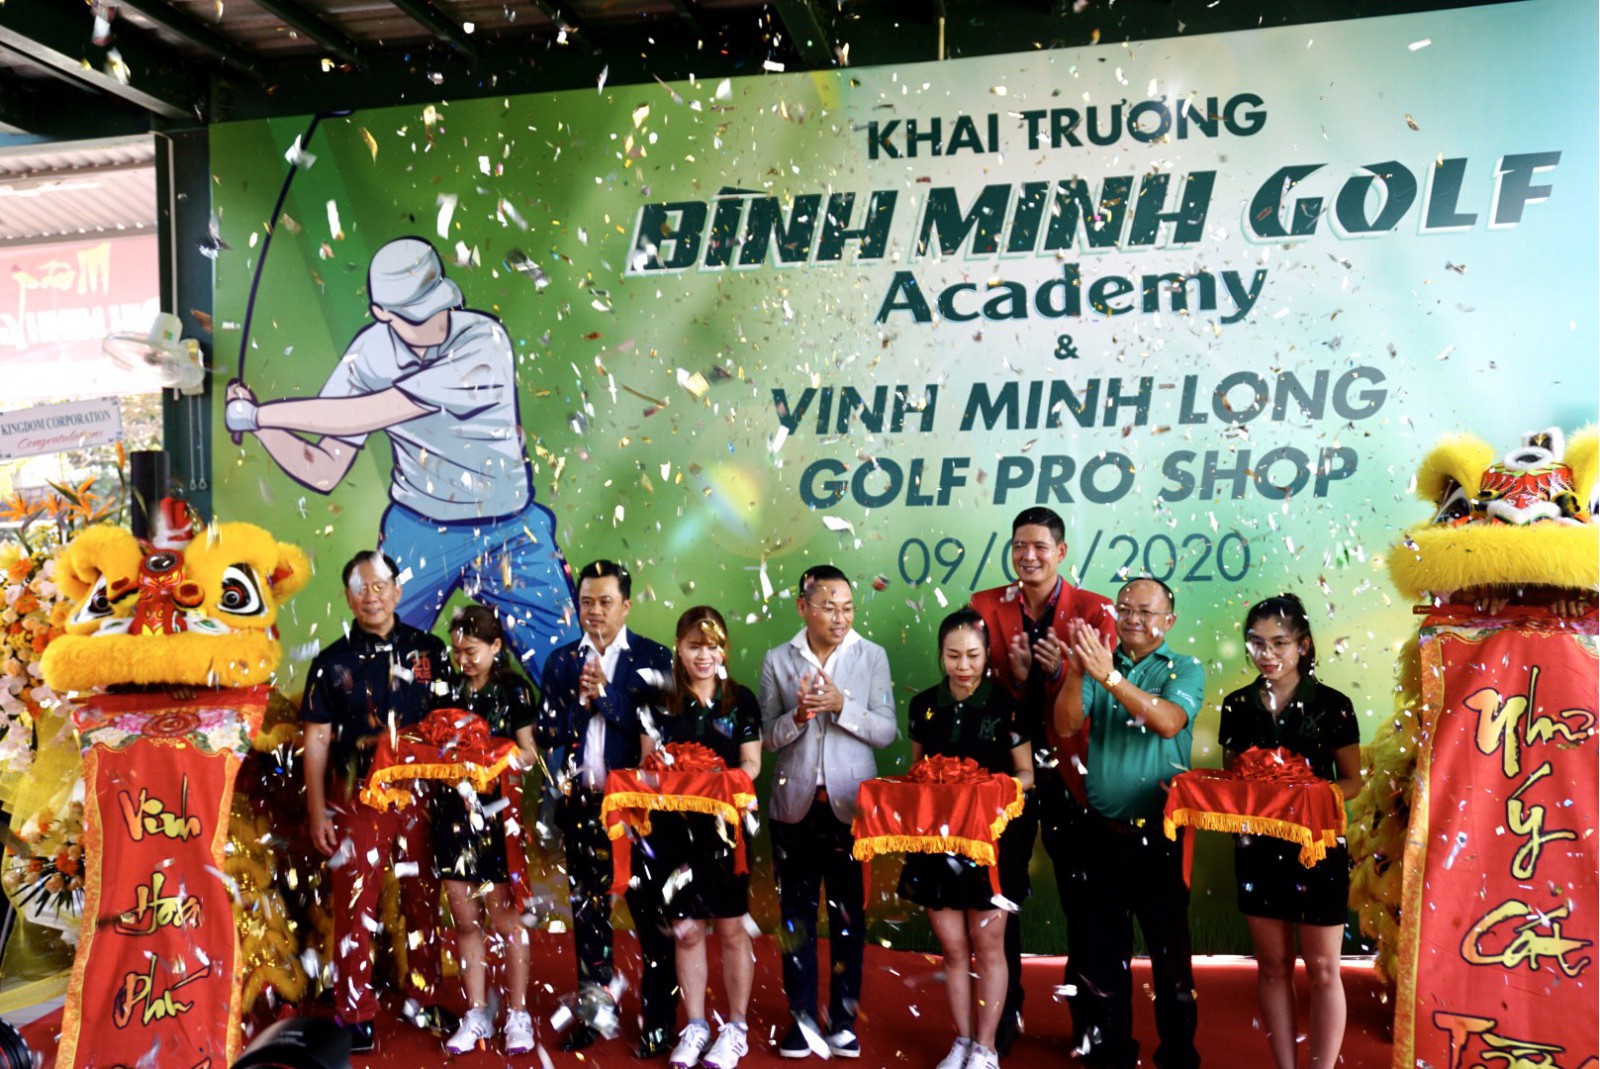 Bình Minh Golf Academy và Pro Shop Vinh Minh Long chính thức khai trương tại sân tập Trần Thái Quận 7